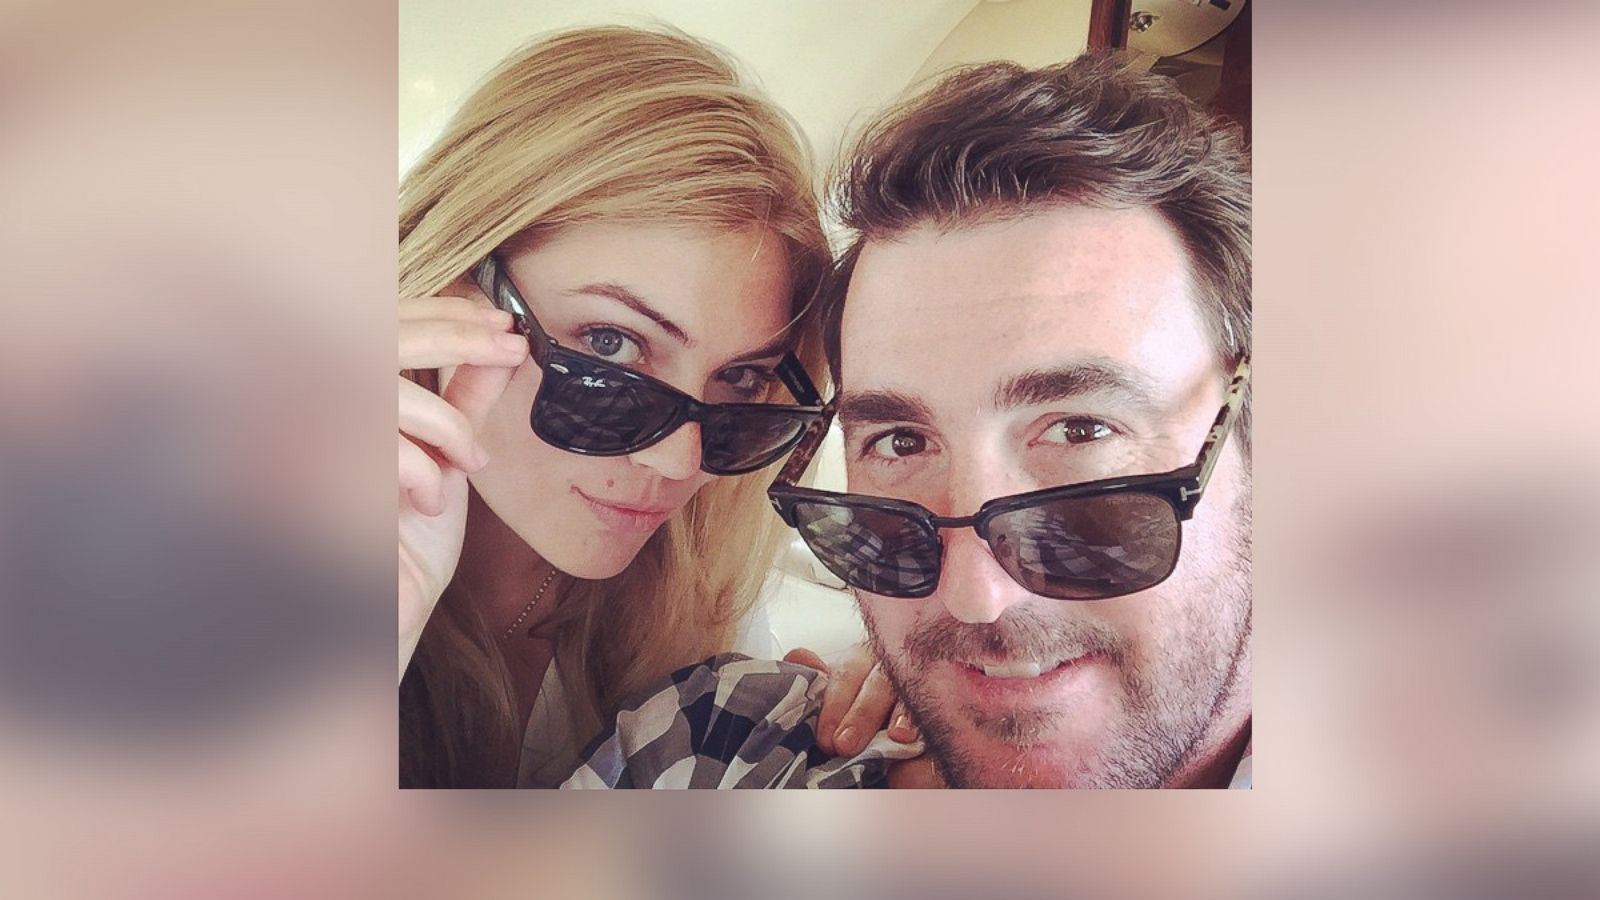 Kate Upton Fires Up Husband Justin Verlander Via Latest Instagram